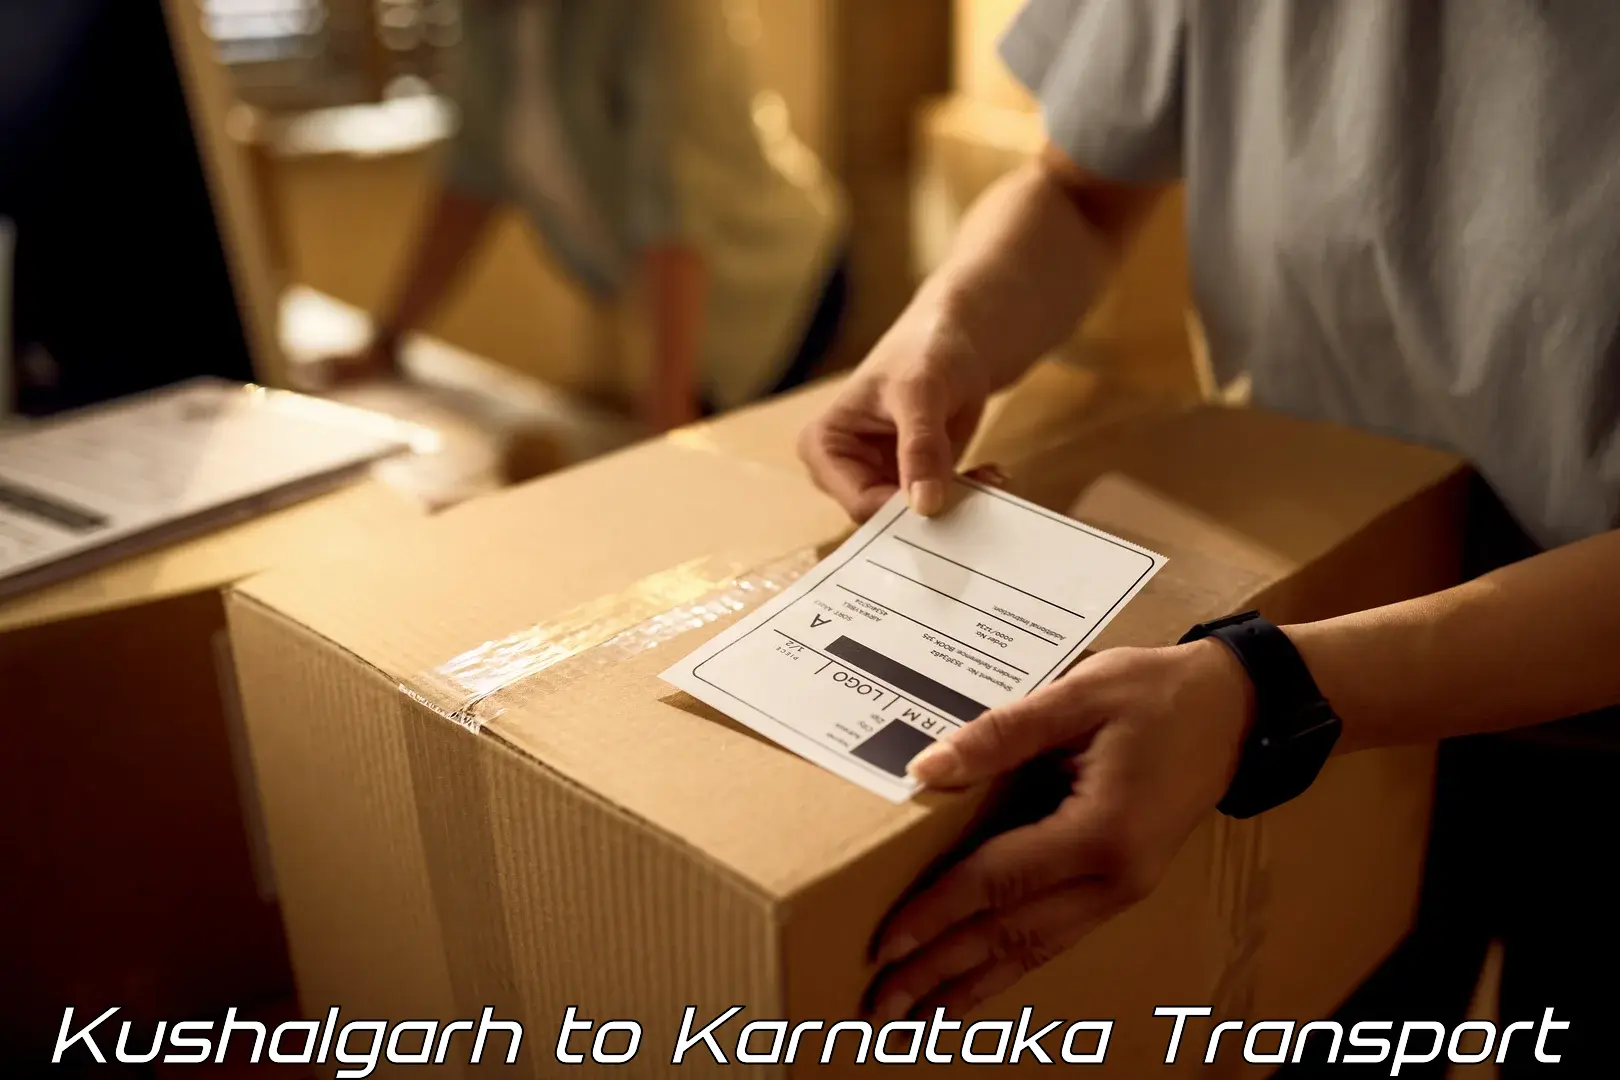 Shipping partner Kushalgarh to Kodagu